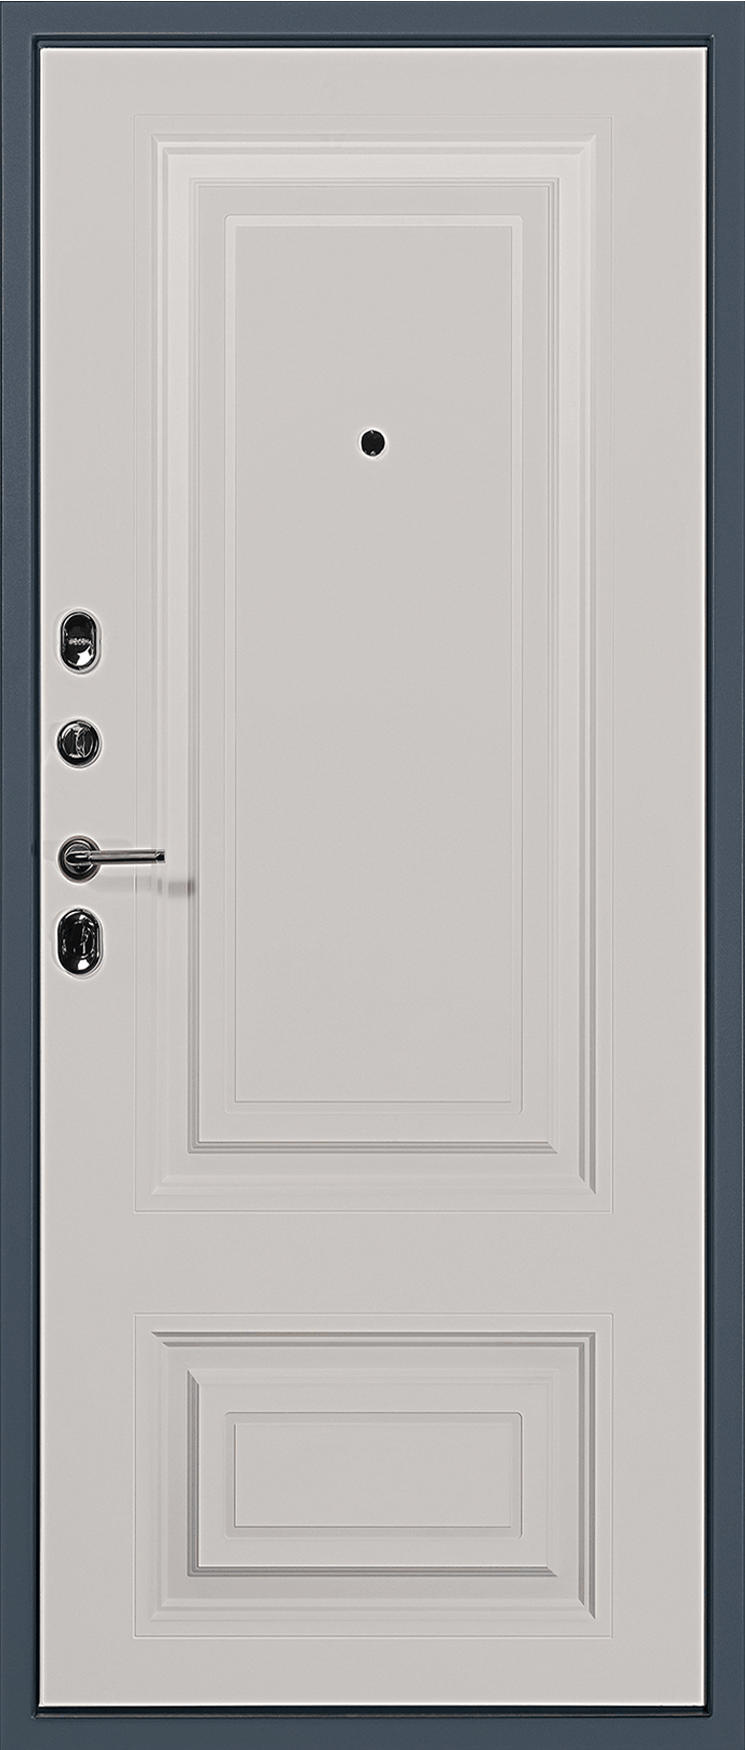 Карда Входная дверь Termo Premium 01, арт. 0007029 - фото №1